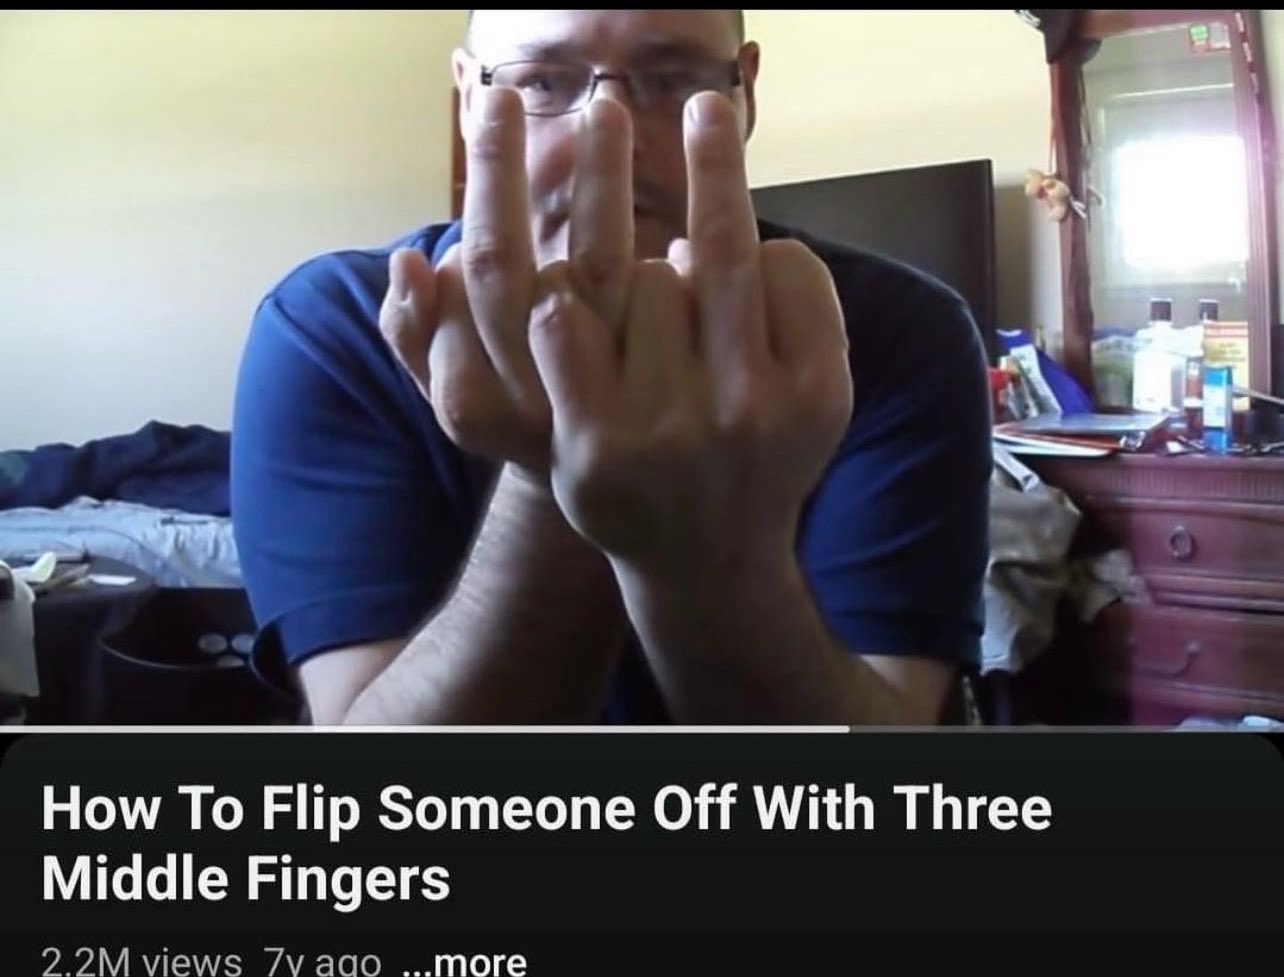 Guy mirrored middle finger | Middle finger meme, Middle finger emoji, Middle  finger picture